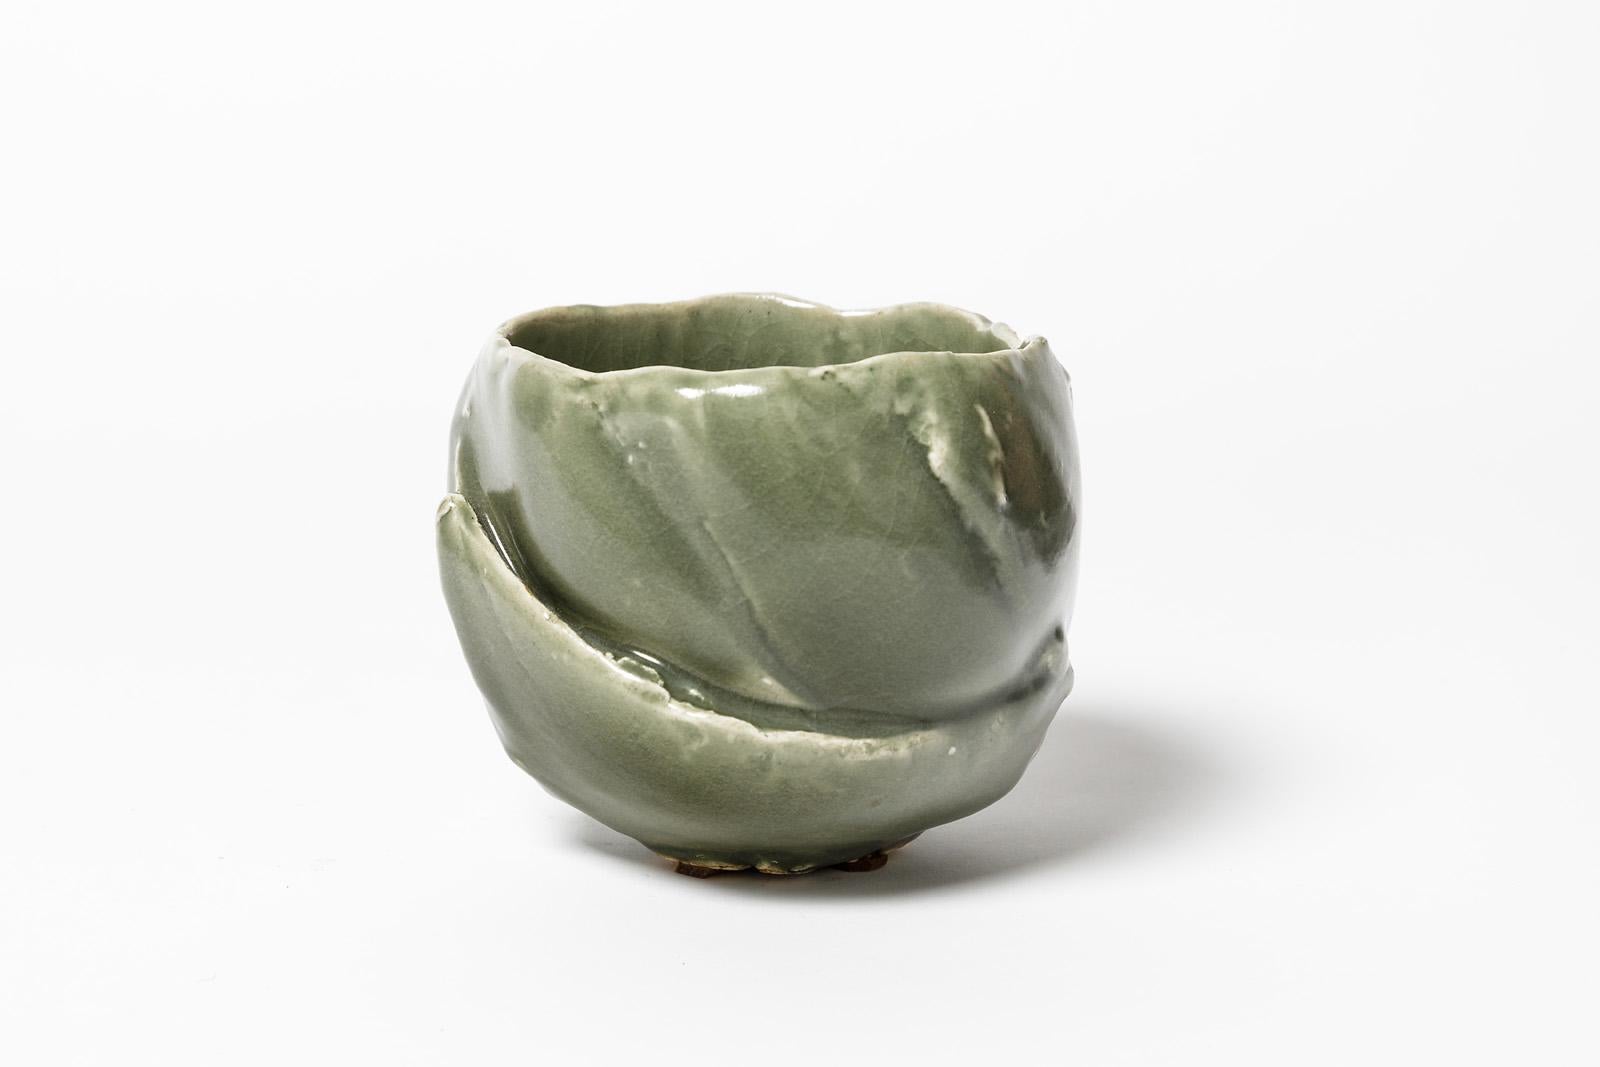 Beaux Arts Ceramic Bowl with Celadon Glaze Decoration, by Jean-François Fouhilloux